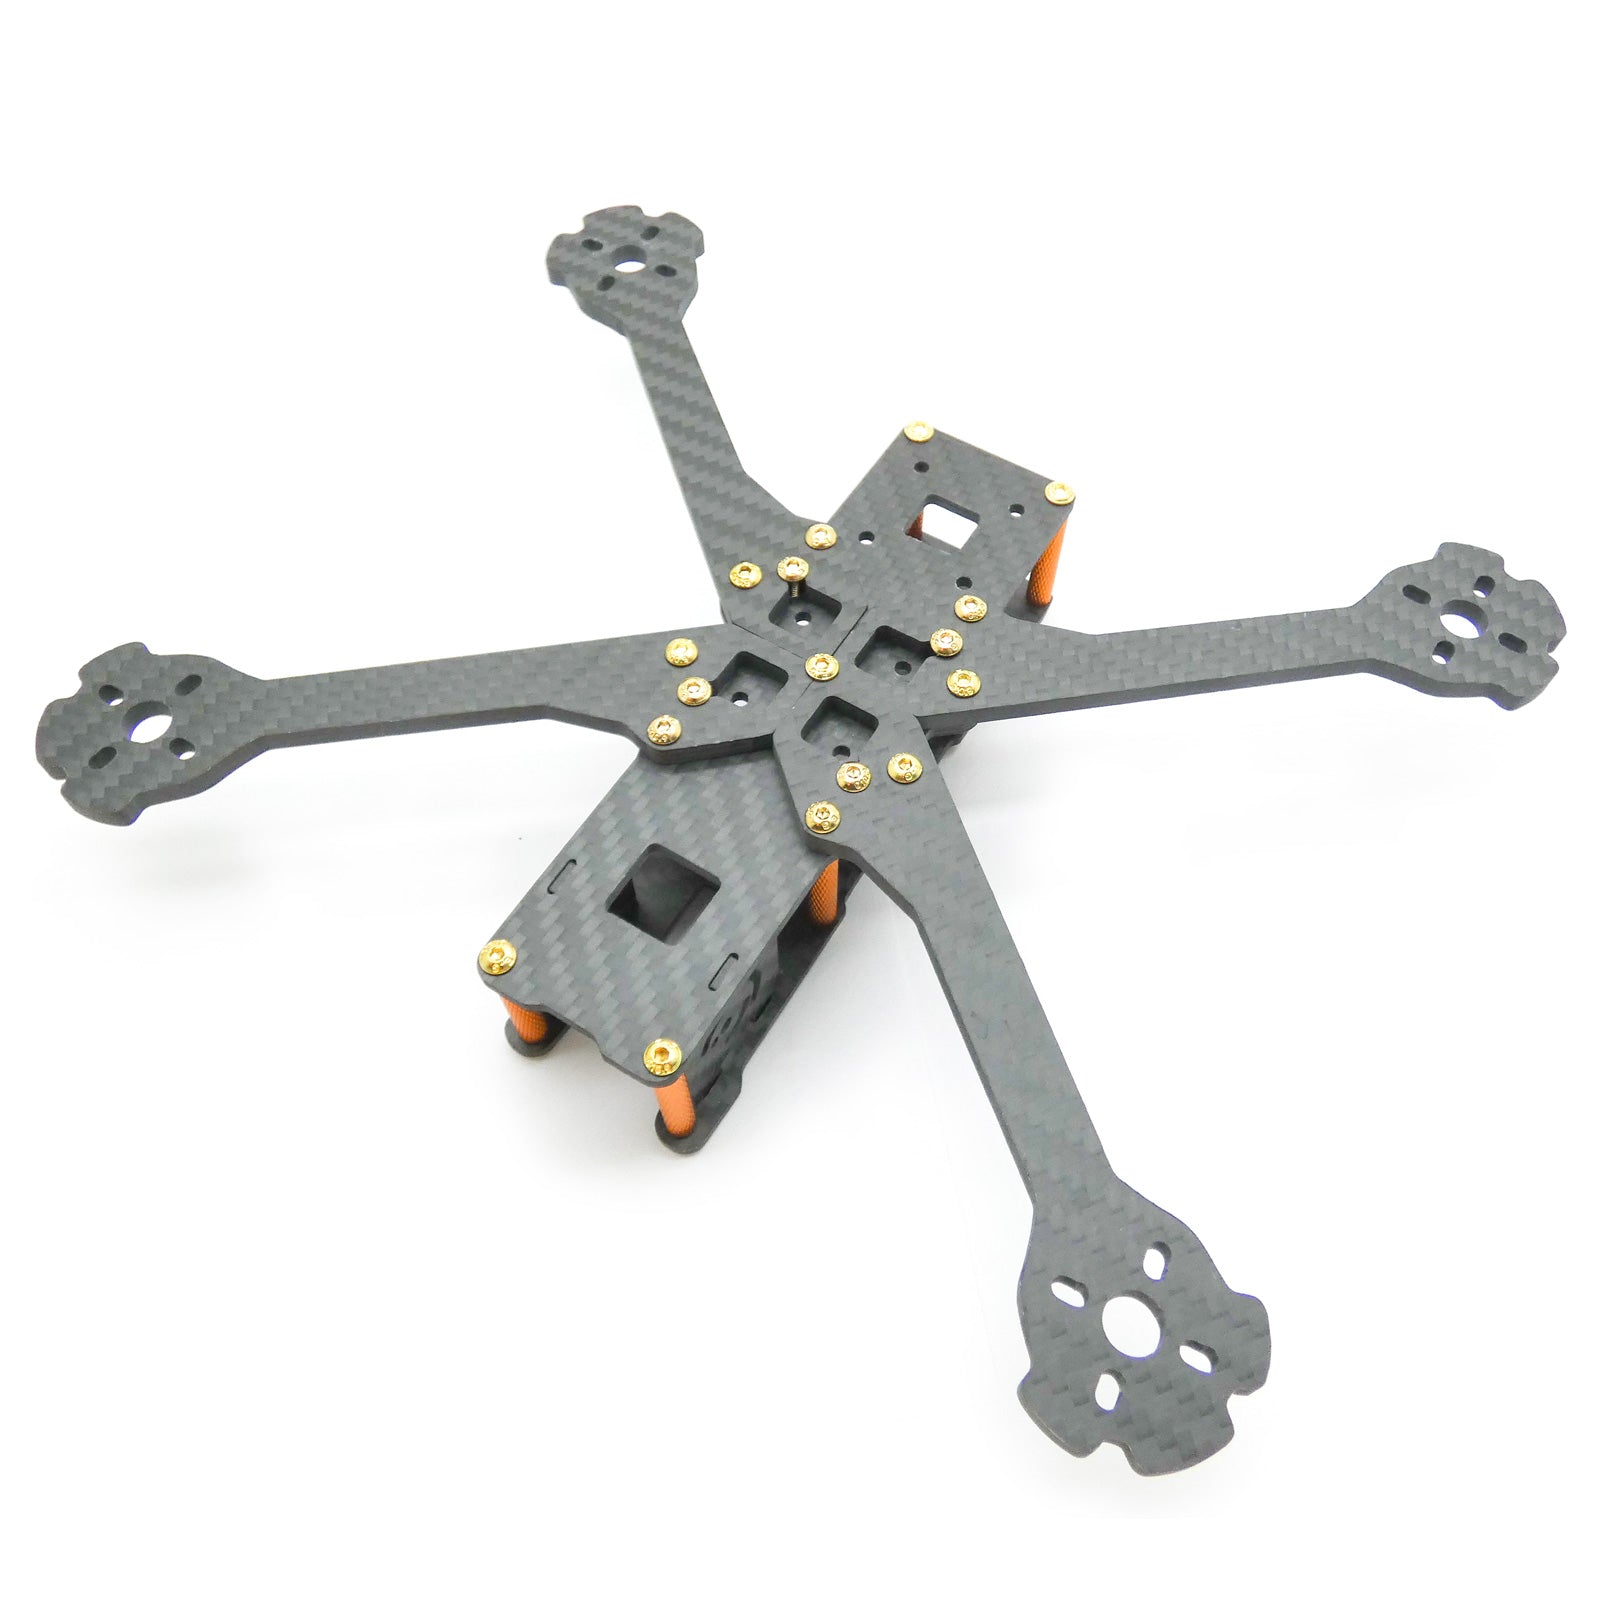 Light 220mm FPV Racing Drone Frame Kit for 5